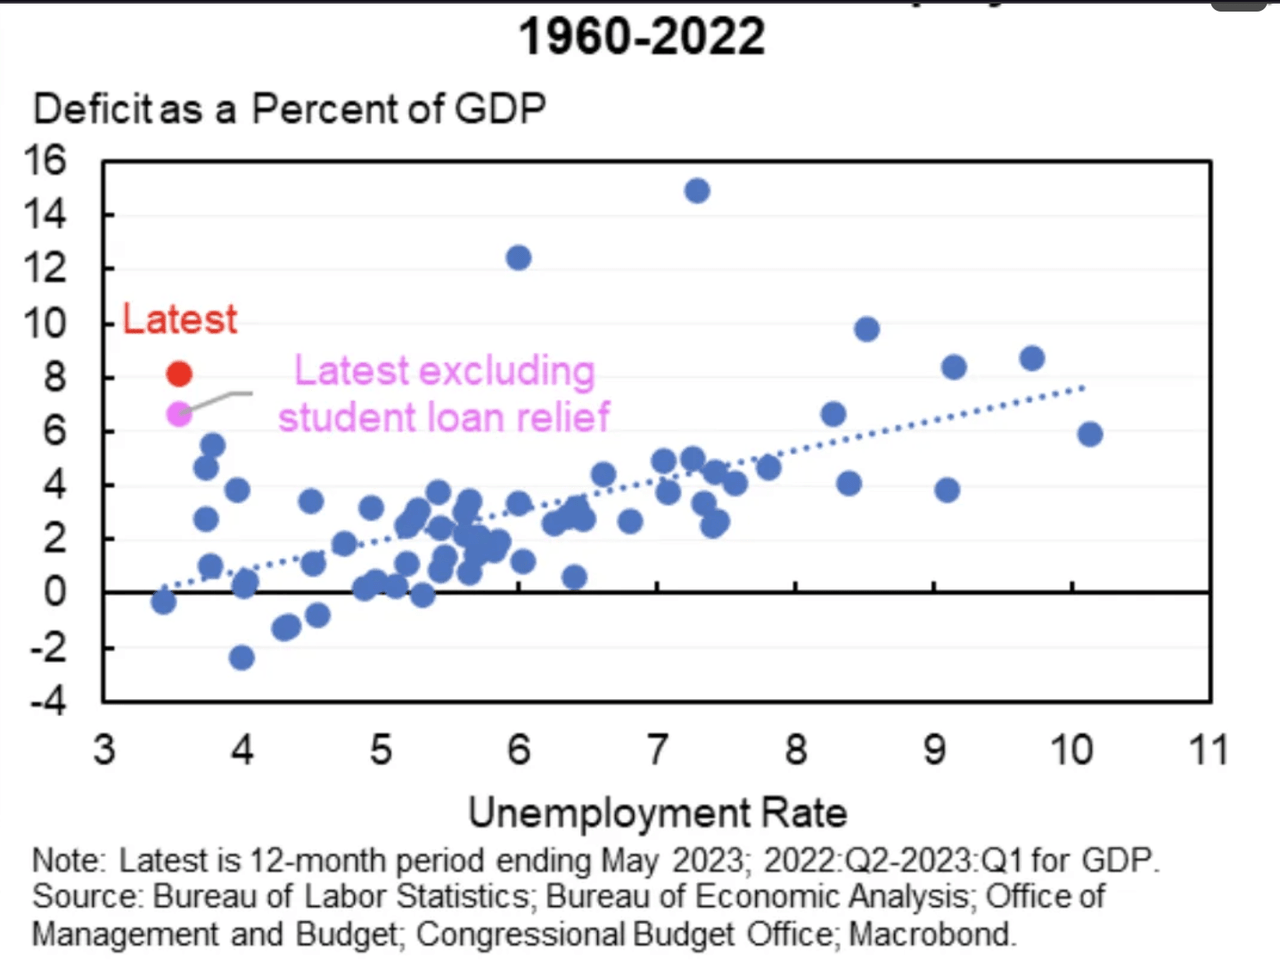 Deficit as Percent of GDP/Unemployment